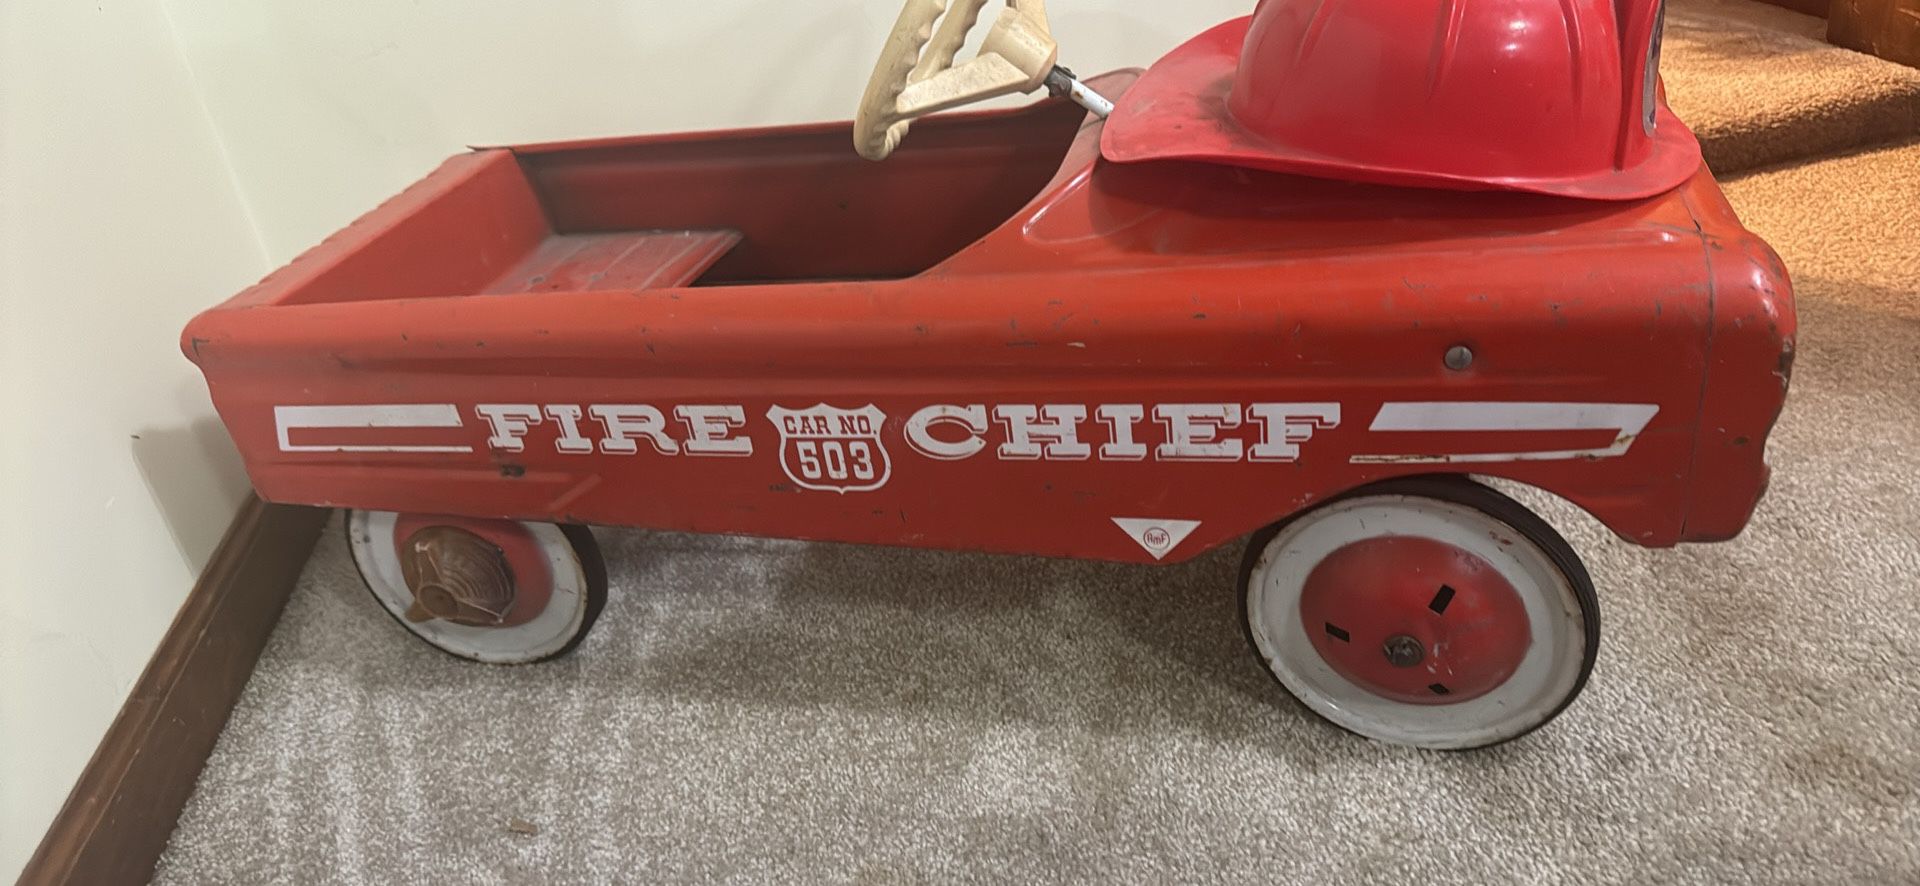 1960s Peddle Fire Chief 